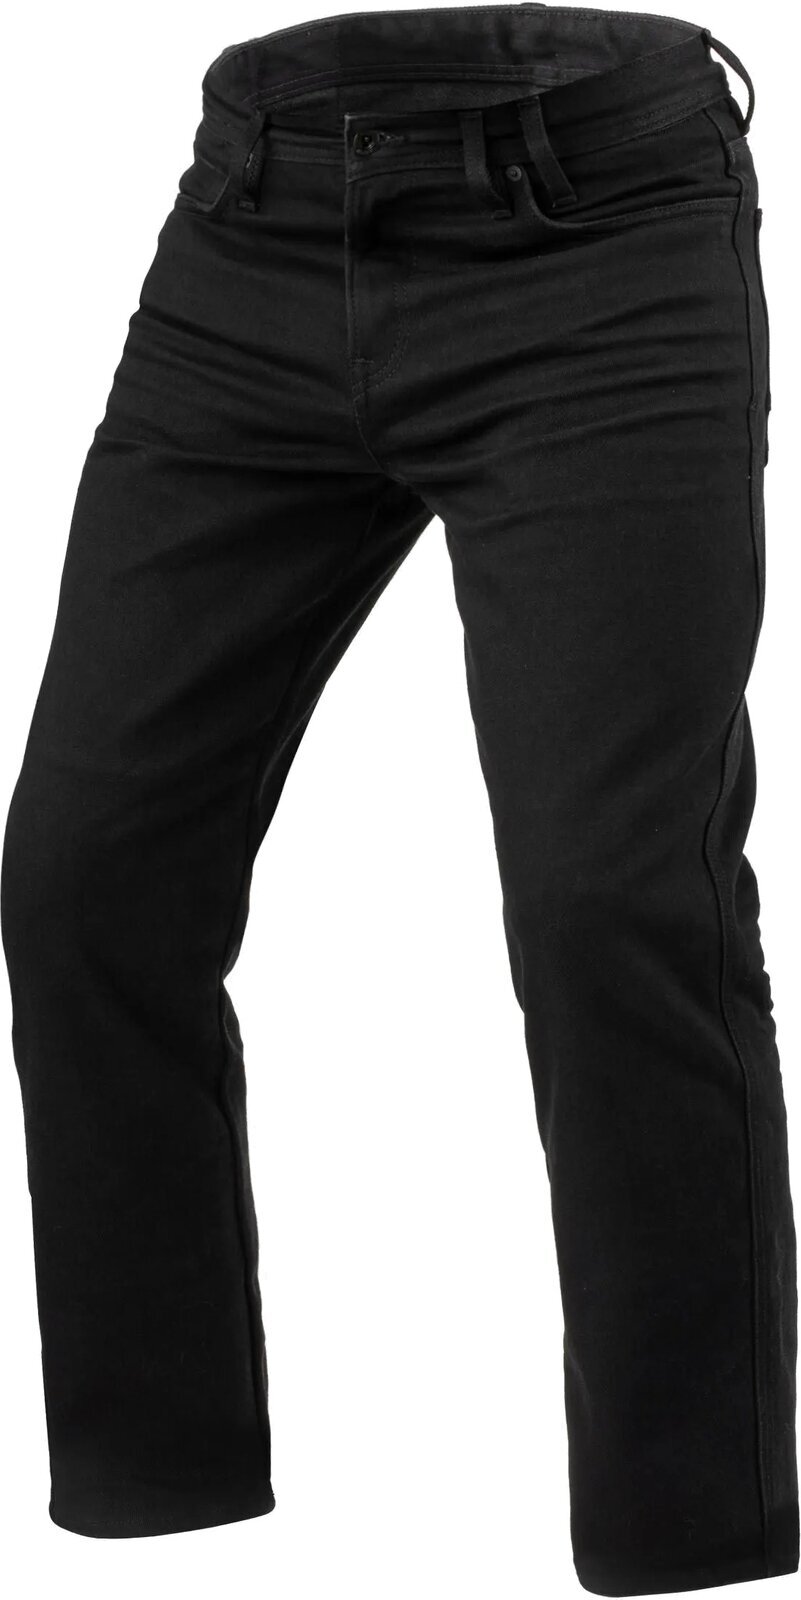 Motoristične jeans hlače Rev'it! Jeans Lombard 3 RF Black 34/30 Motoristične jeans hlače